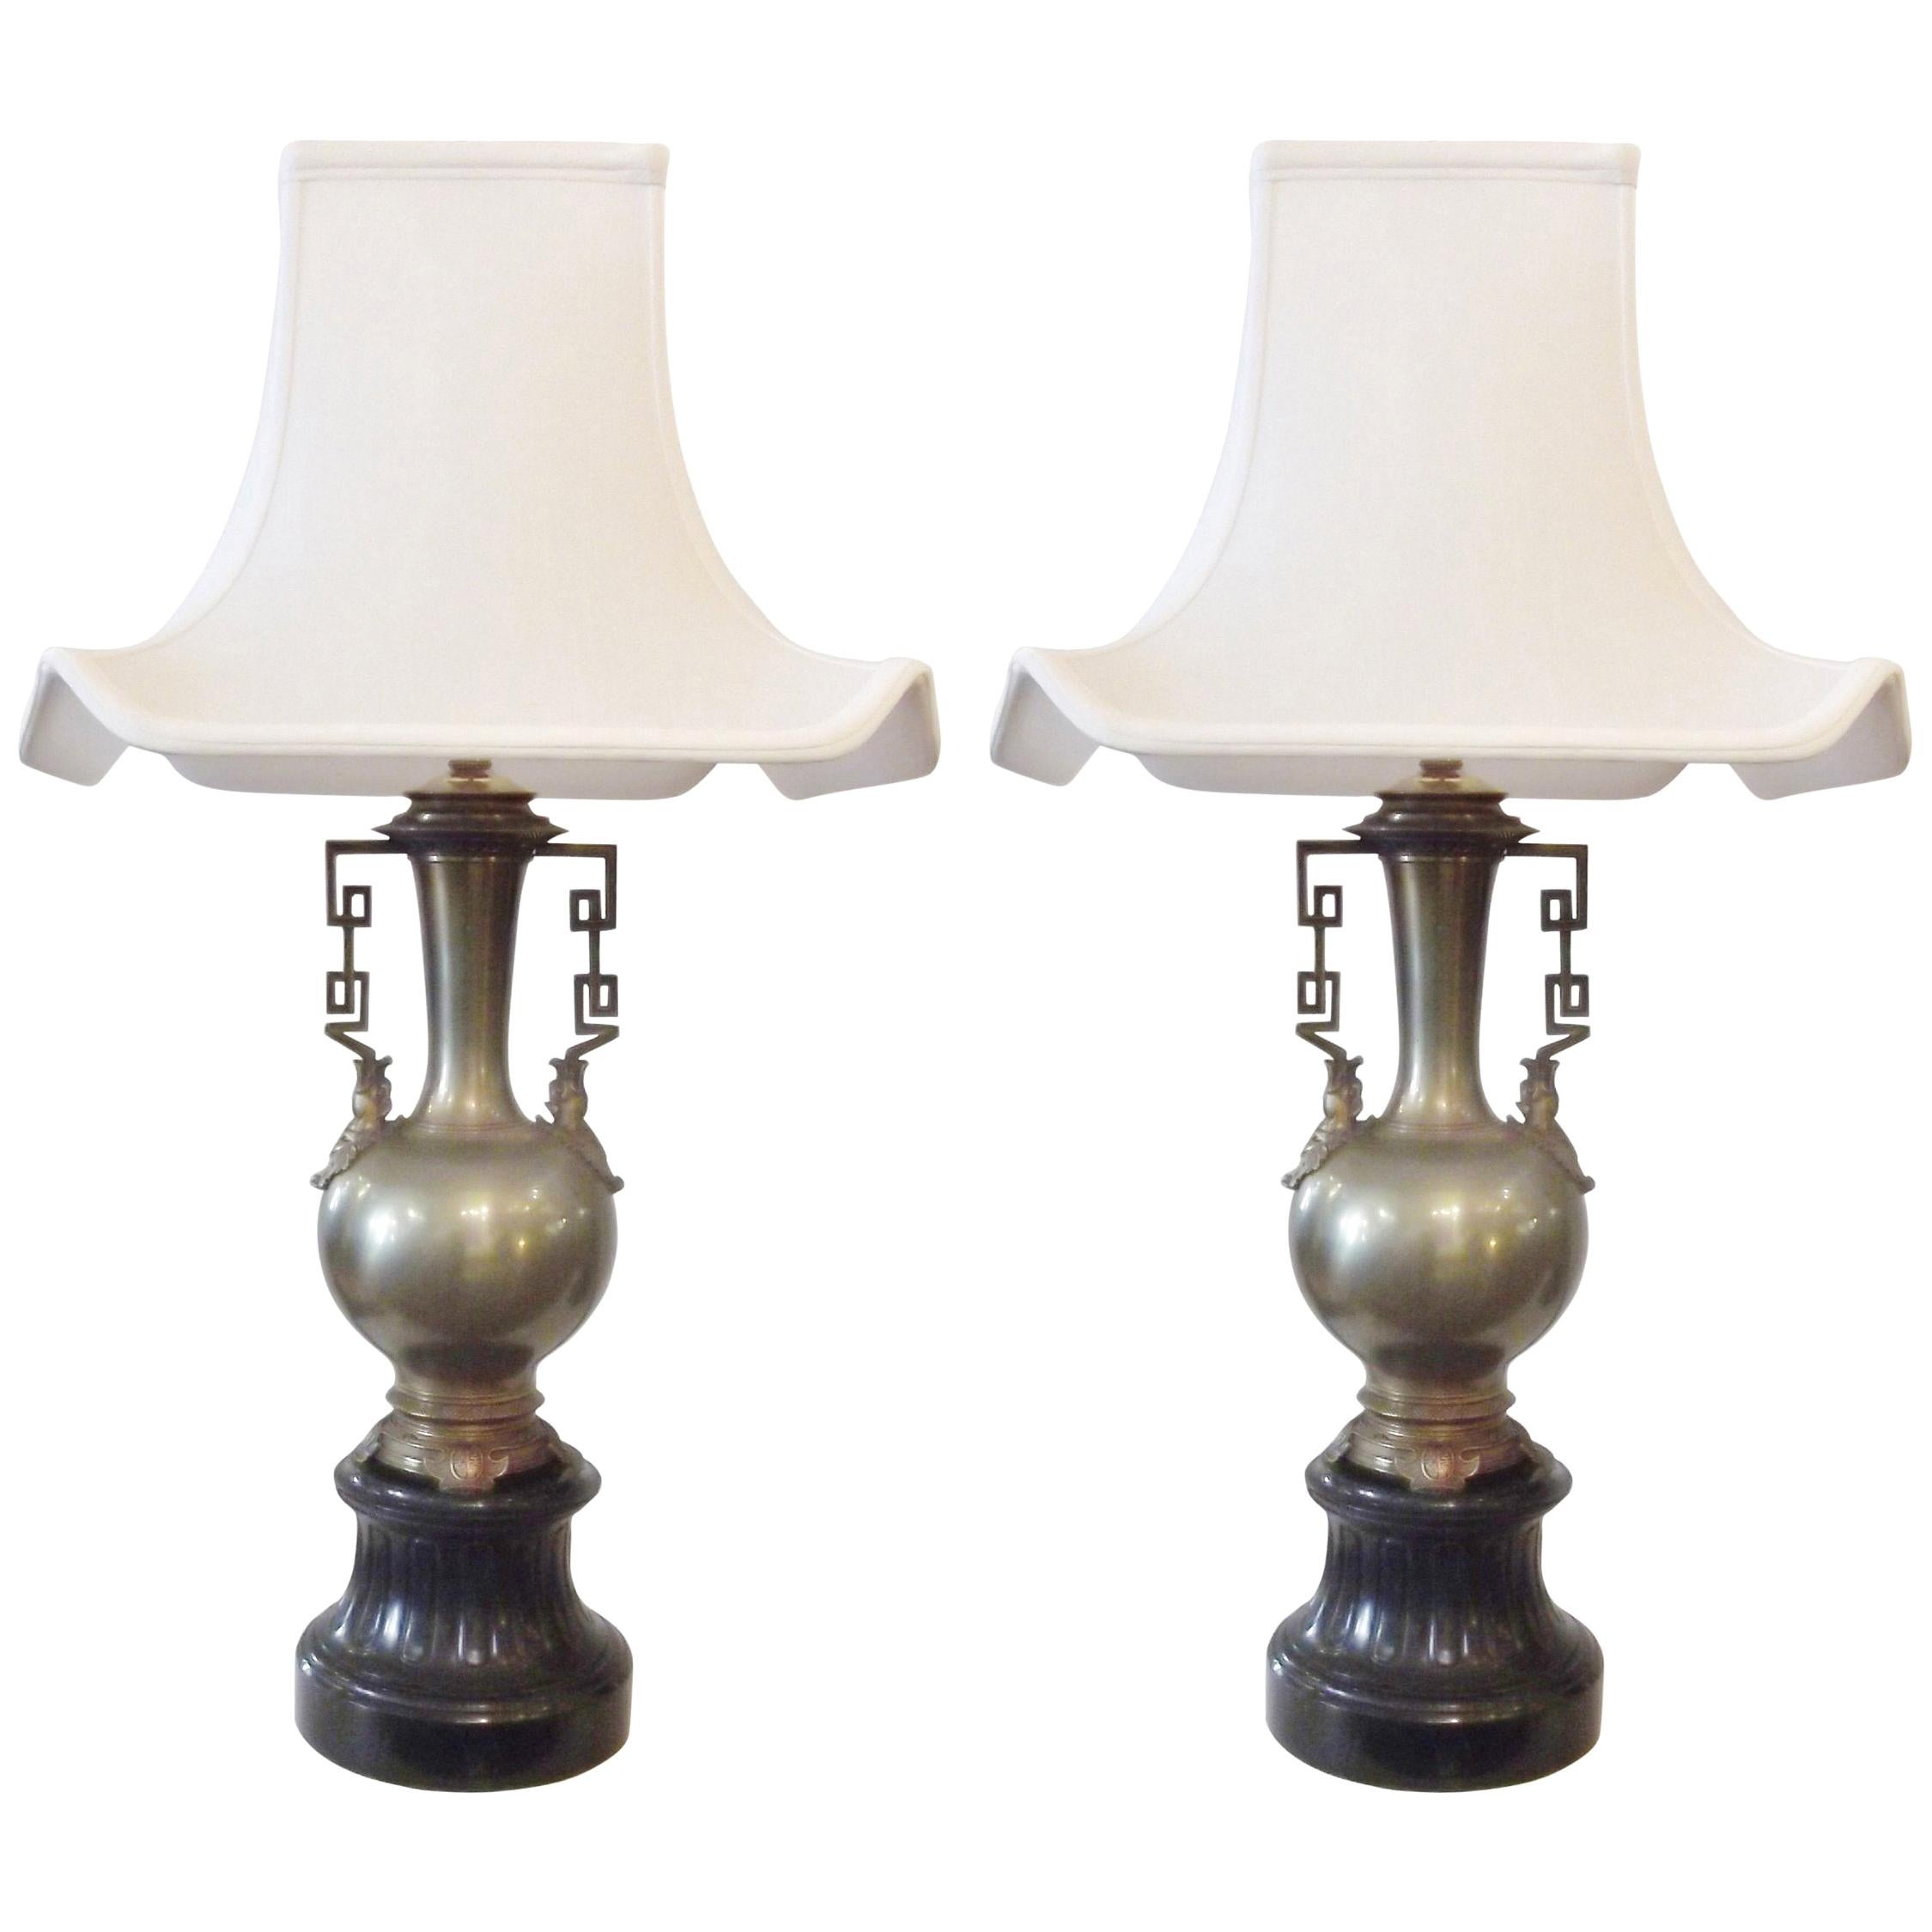 Paar französische Chinoiserie-Lampen aus dem 19. Jahrhundert mit Schiefersockeln